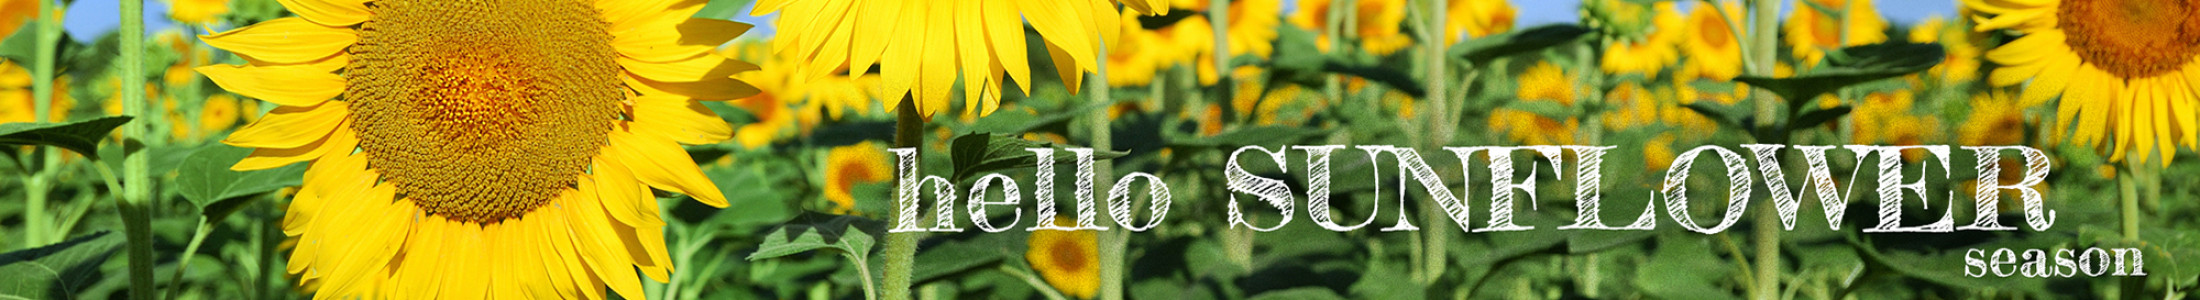 hello sunflower season 